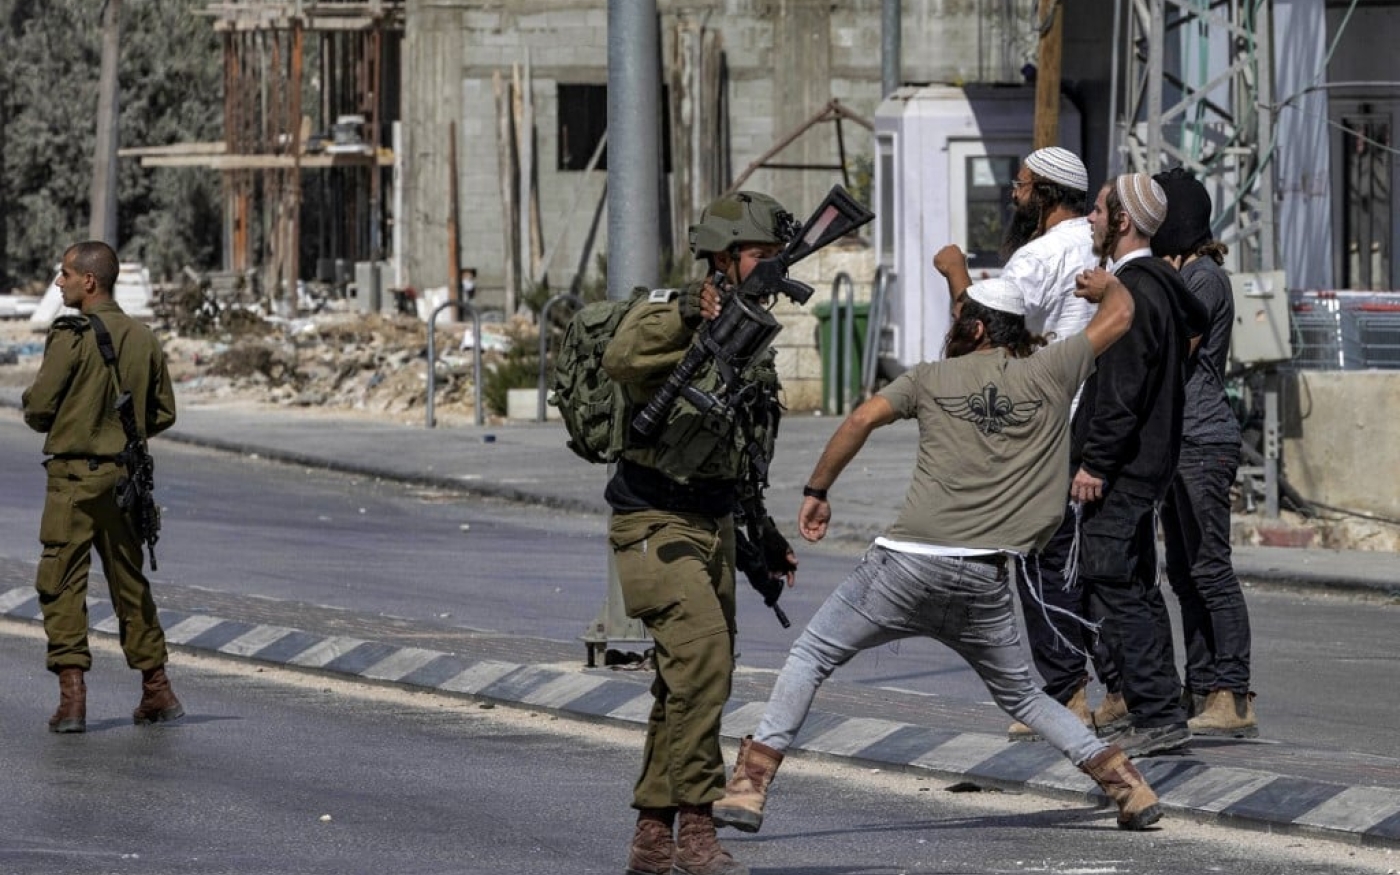 Des soldats israéliens protègent des colons israéliens qui jettent des pierres en direction de Palestiniens (non visibles sur la photo) au cours d’affrontements dans la ville de Huwwara (Cisjordanie occupée), le 13 octobre 2022 (AFP)